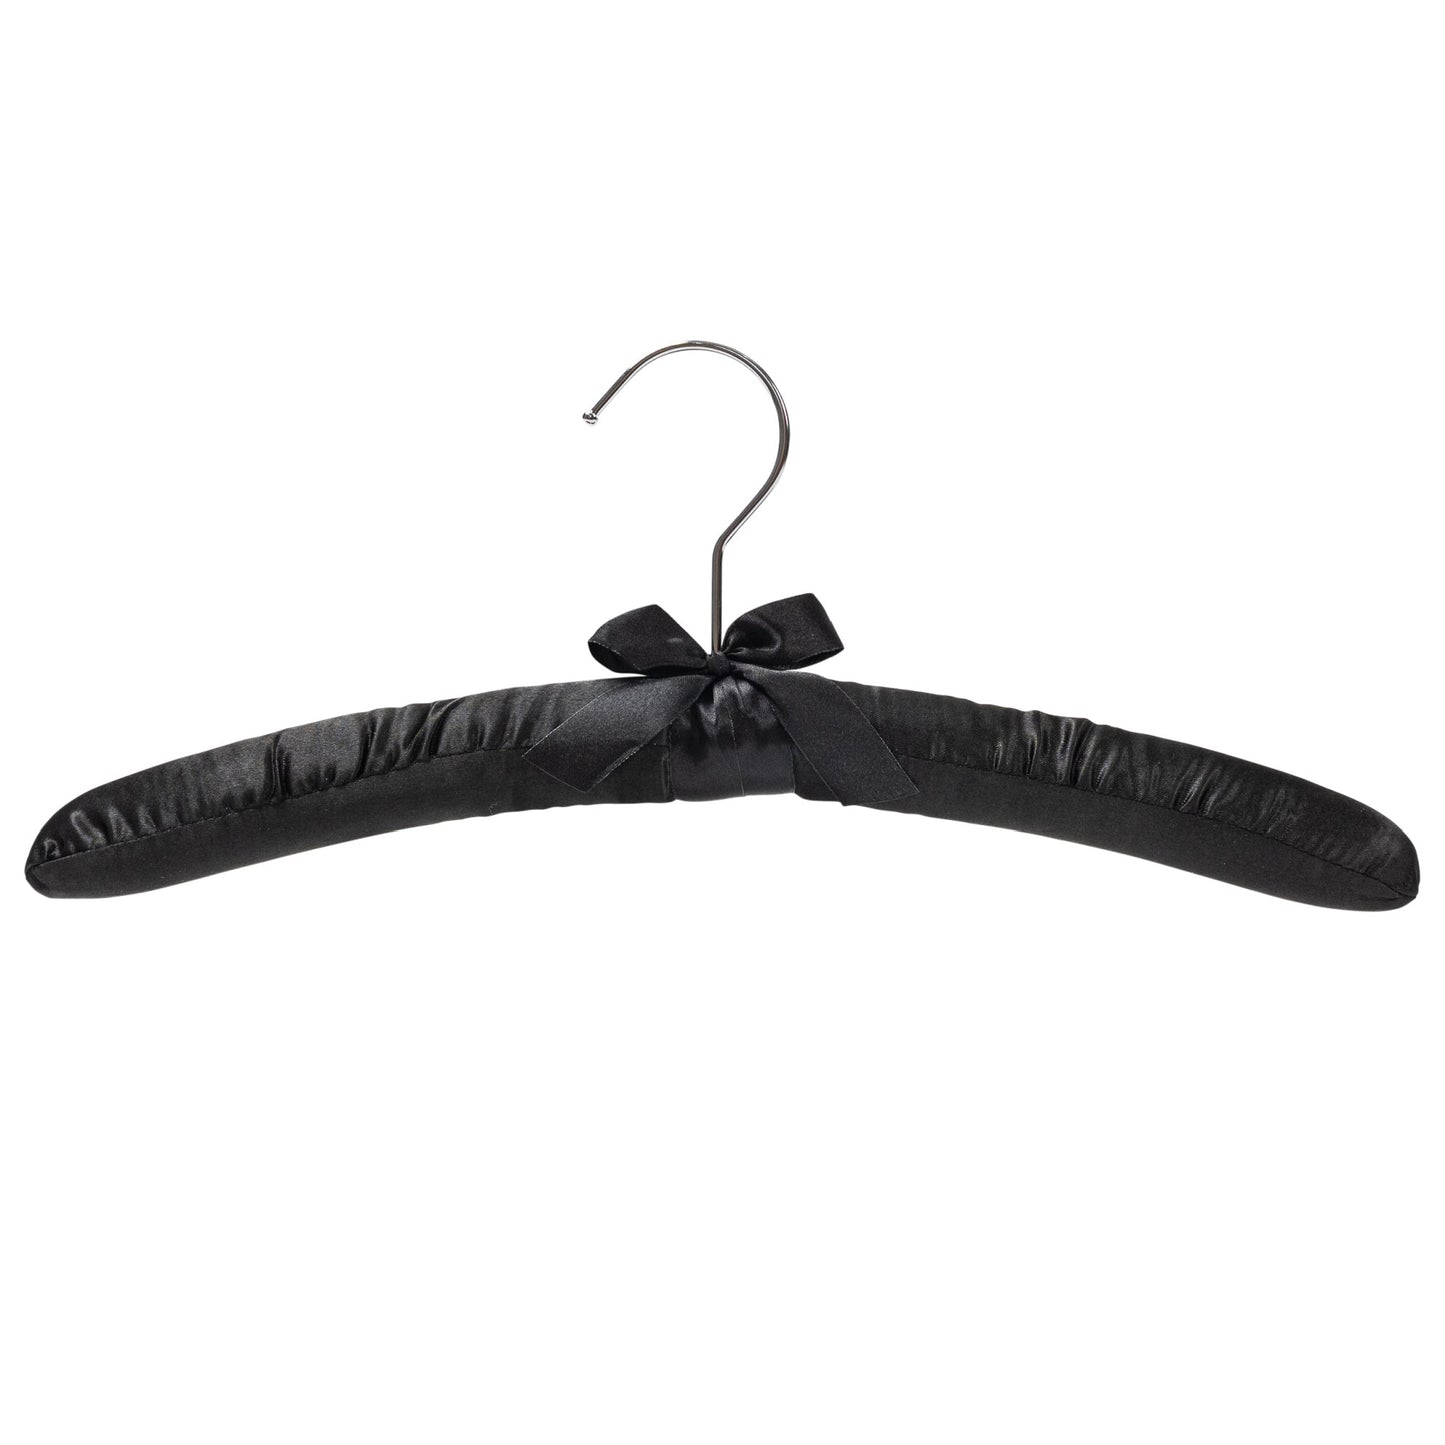 38cm Black Satin Padded Coat Hanger with Chrome Hook-Sold in Bundle of 10/25/50 - Rackshop Australia